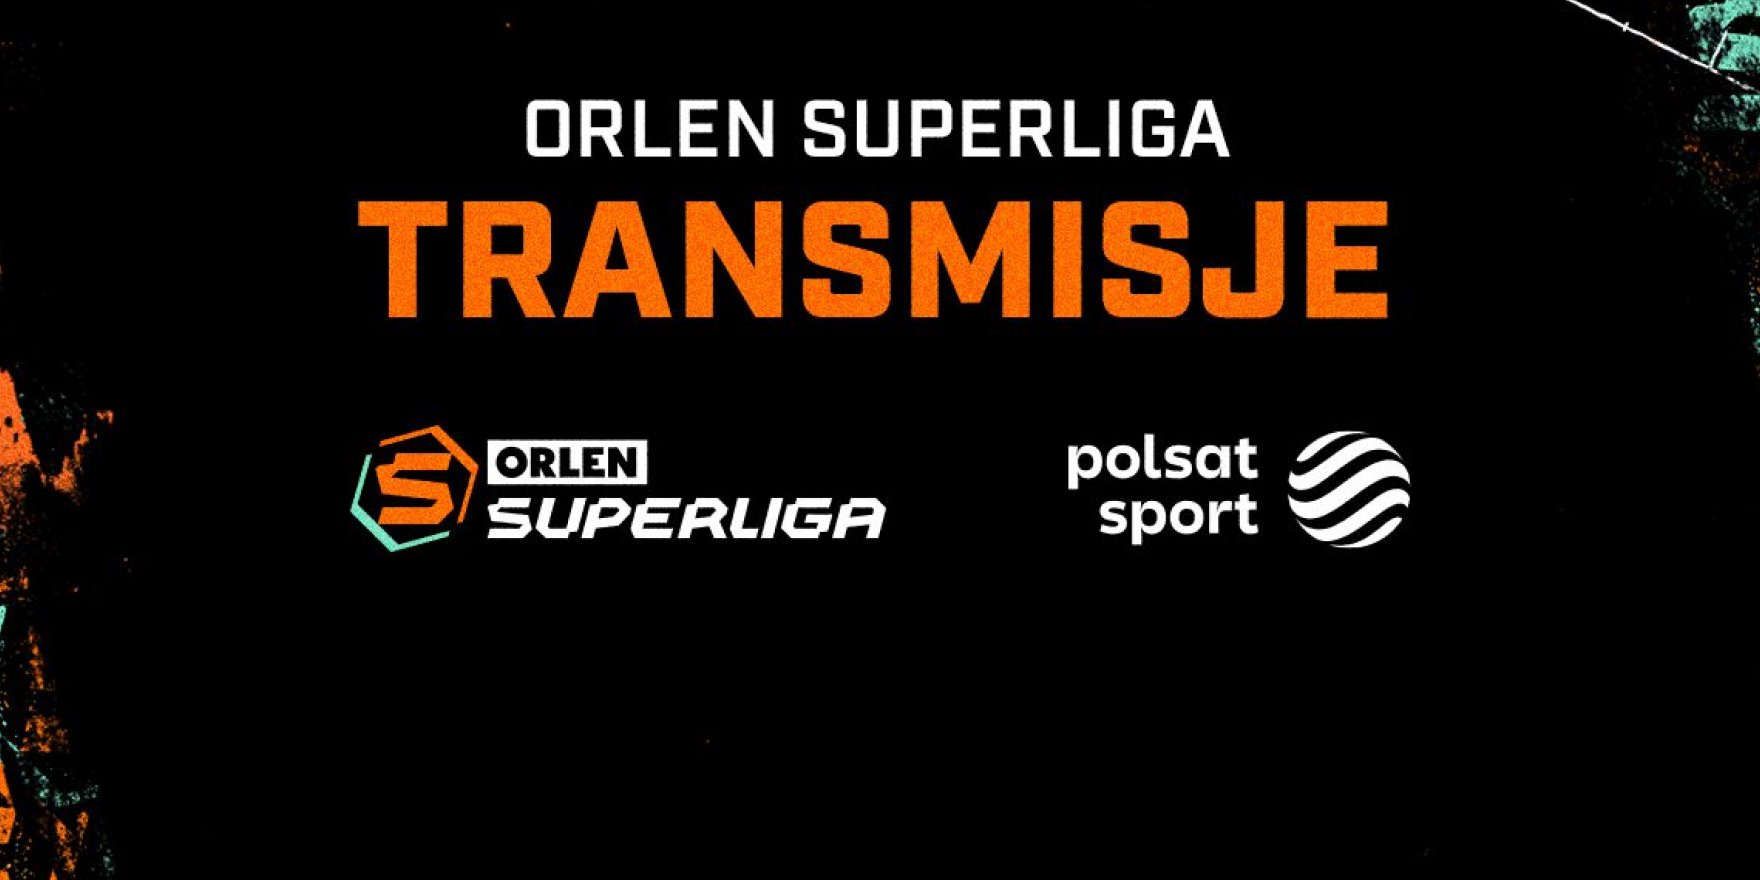 ORLEN Superliga wraca do gry! Zobacz plan transmisji w sportowych kanałach Polsatu